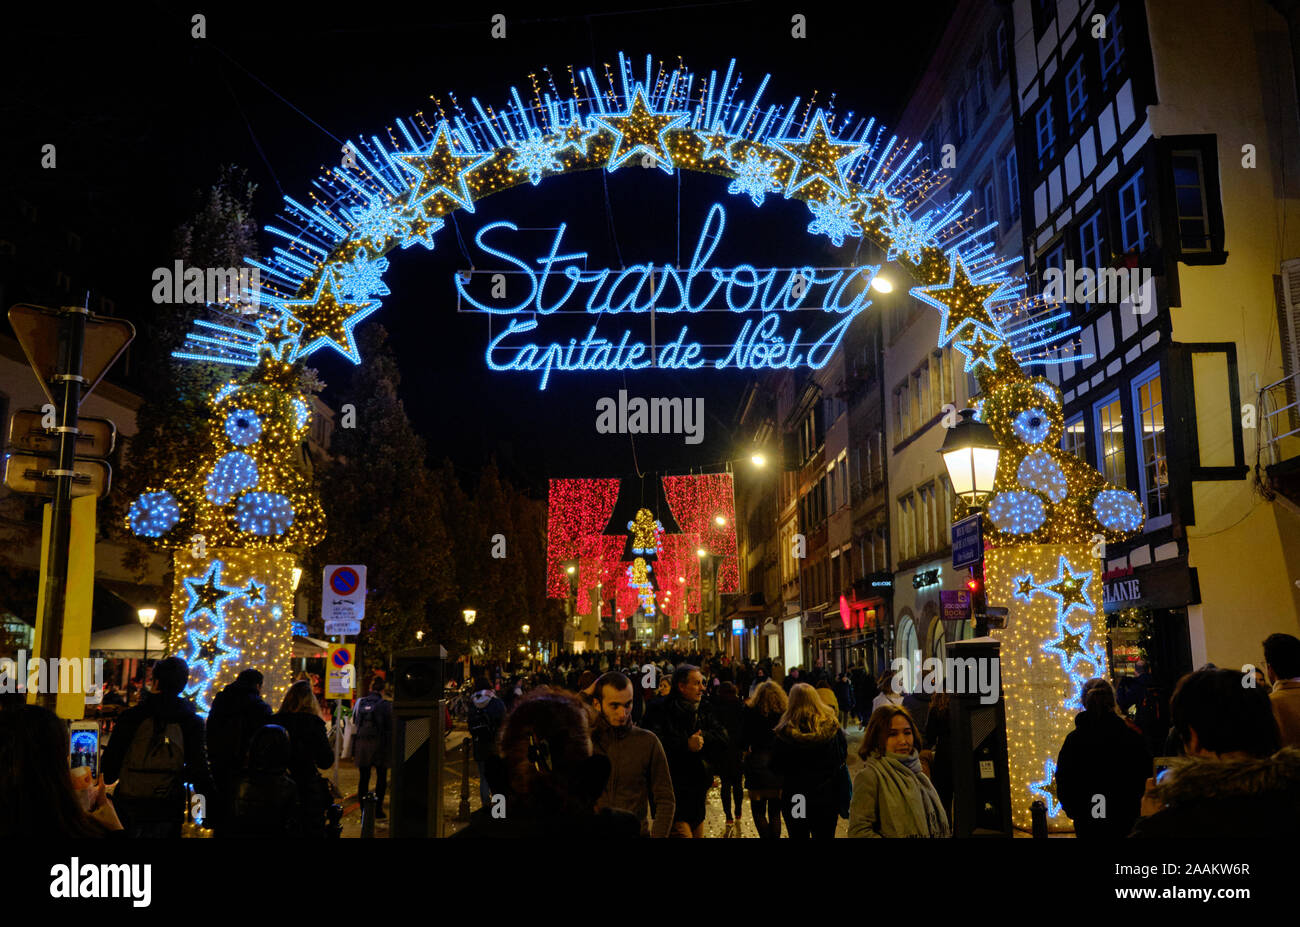 Strasbourg, France. 22 novembre 2019. Journée d'ouverture des marchés de Noël annuels de Strasbourg, l'un des plus anciens de toute l'Europe. L'exposition lumineuse à l'entrée de l'un des marchés mettant en valeur le marché de la capitale de Noël a commencé en 1570 en face de la cathédrale gothique avec seulement quelques stands. Aujourd'hui, plus de 300 étals de marché sont répartis dans toute la ville. Le marché restera ouvert jusqu'au 30 décembre Banque D'Images